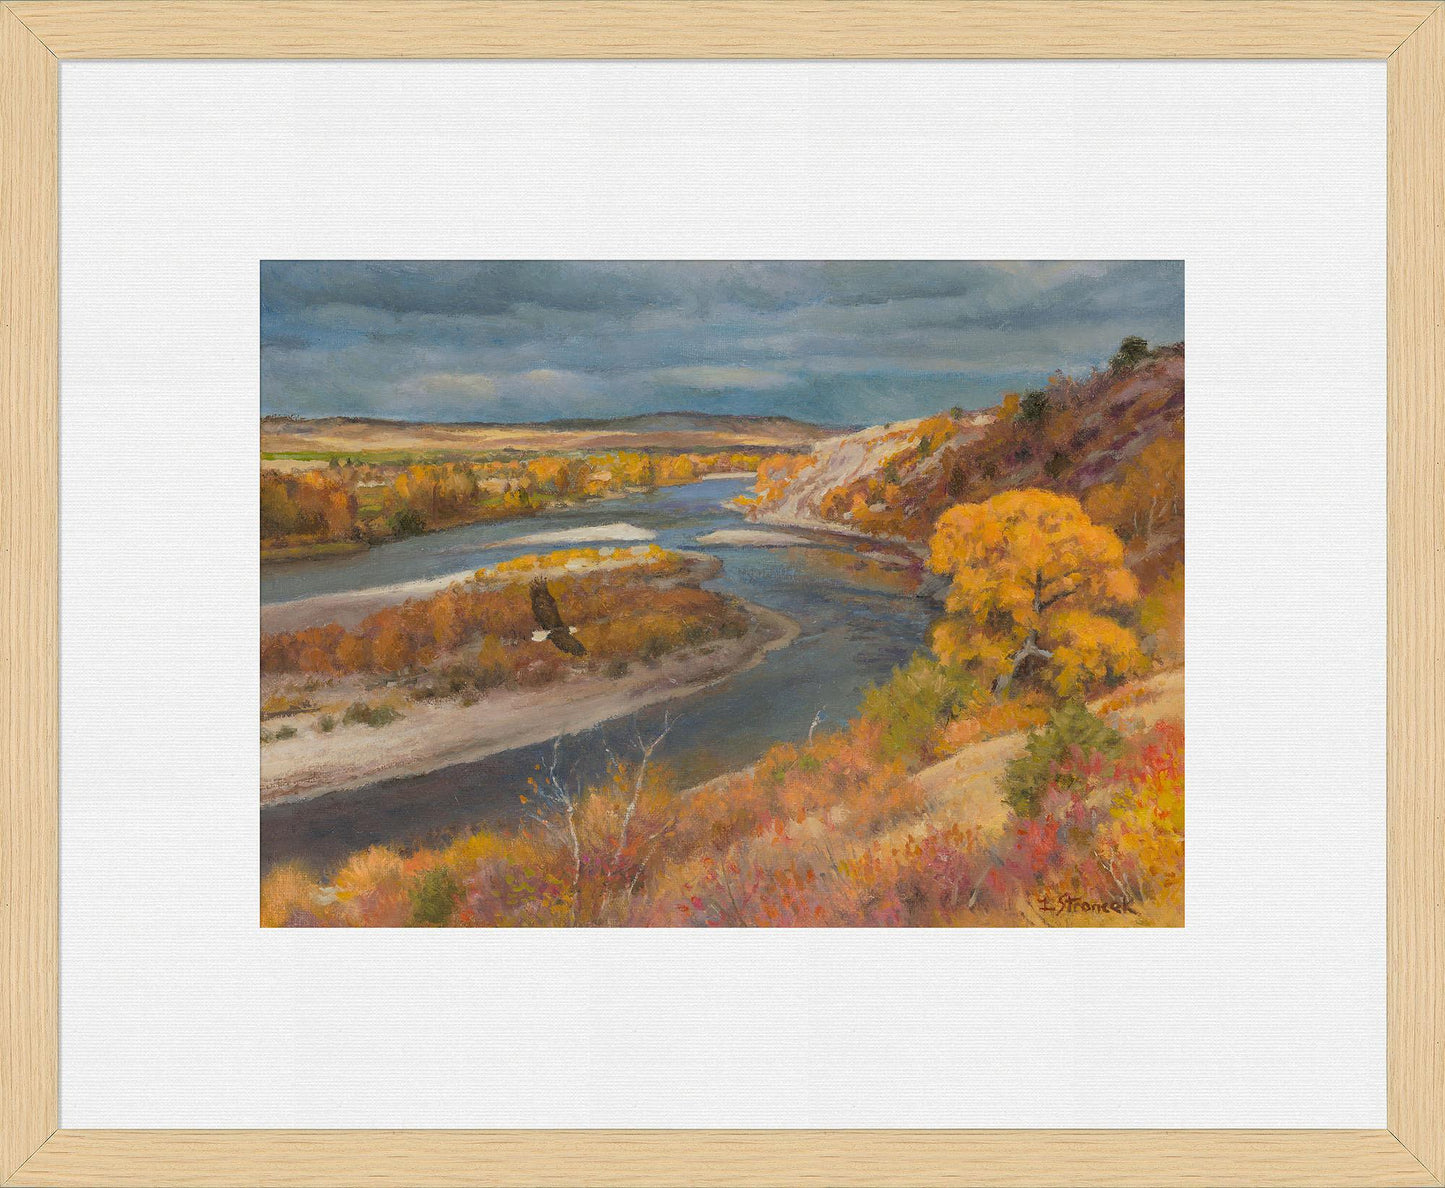 the-river-in-a-golden-mood-framed-print-lee-stroncek-F838650089O.jpg